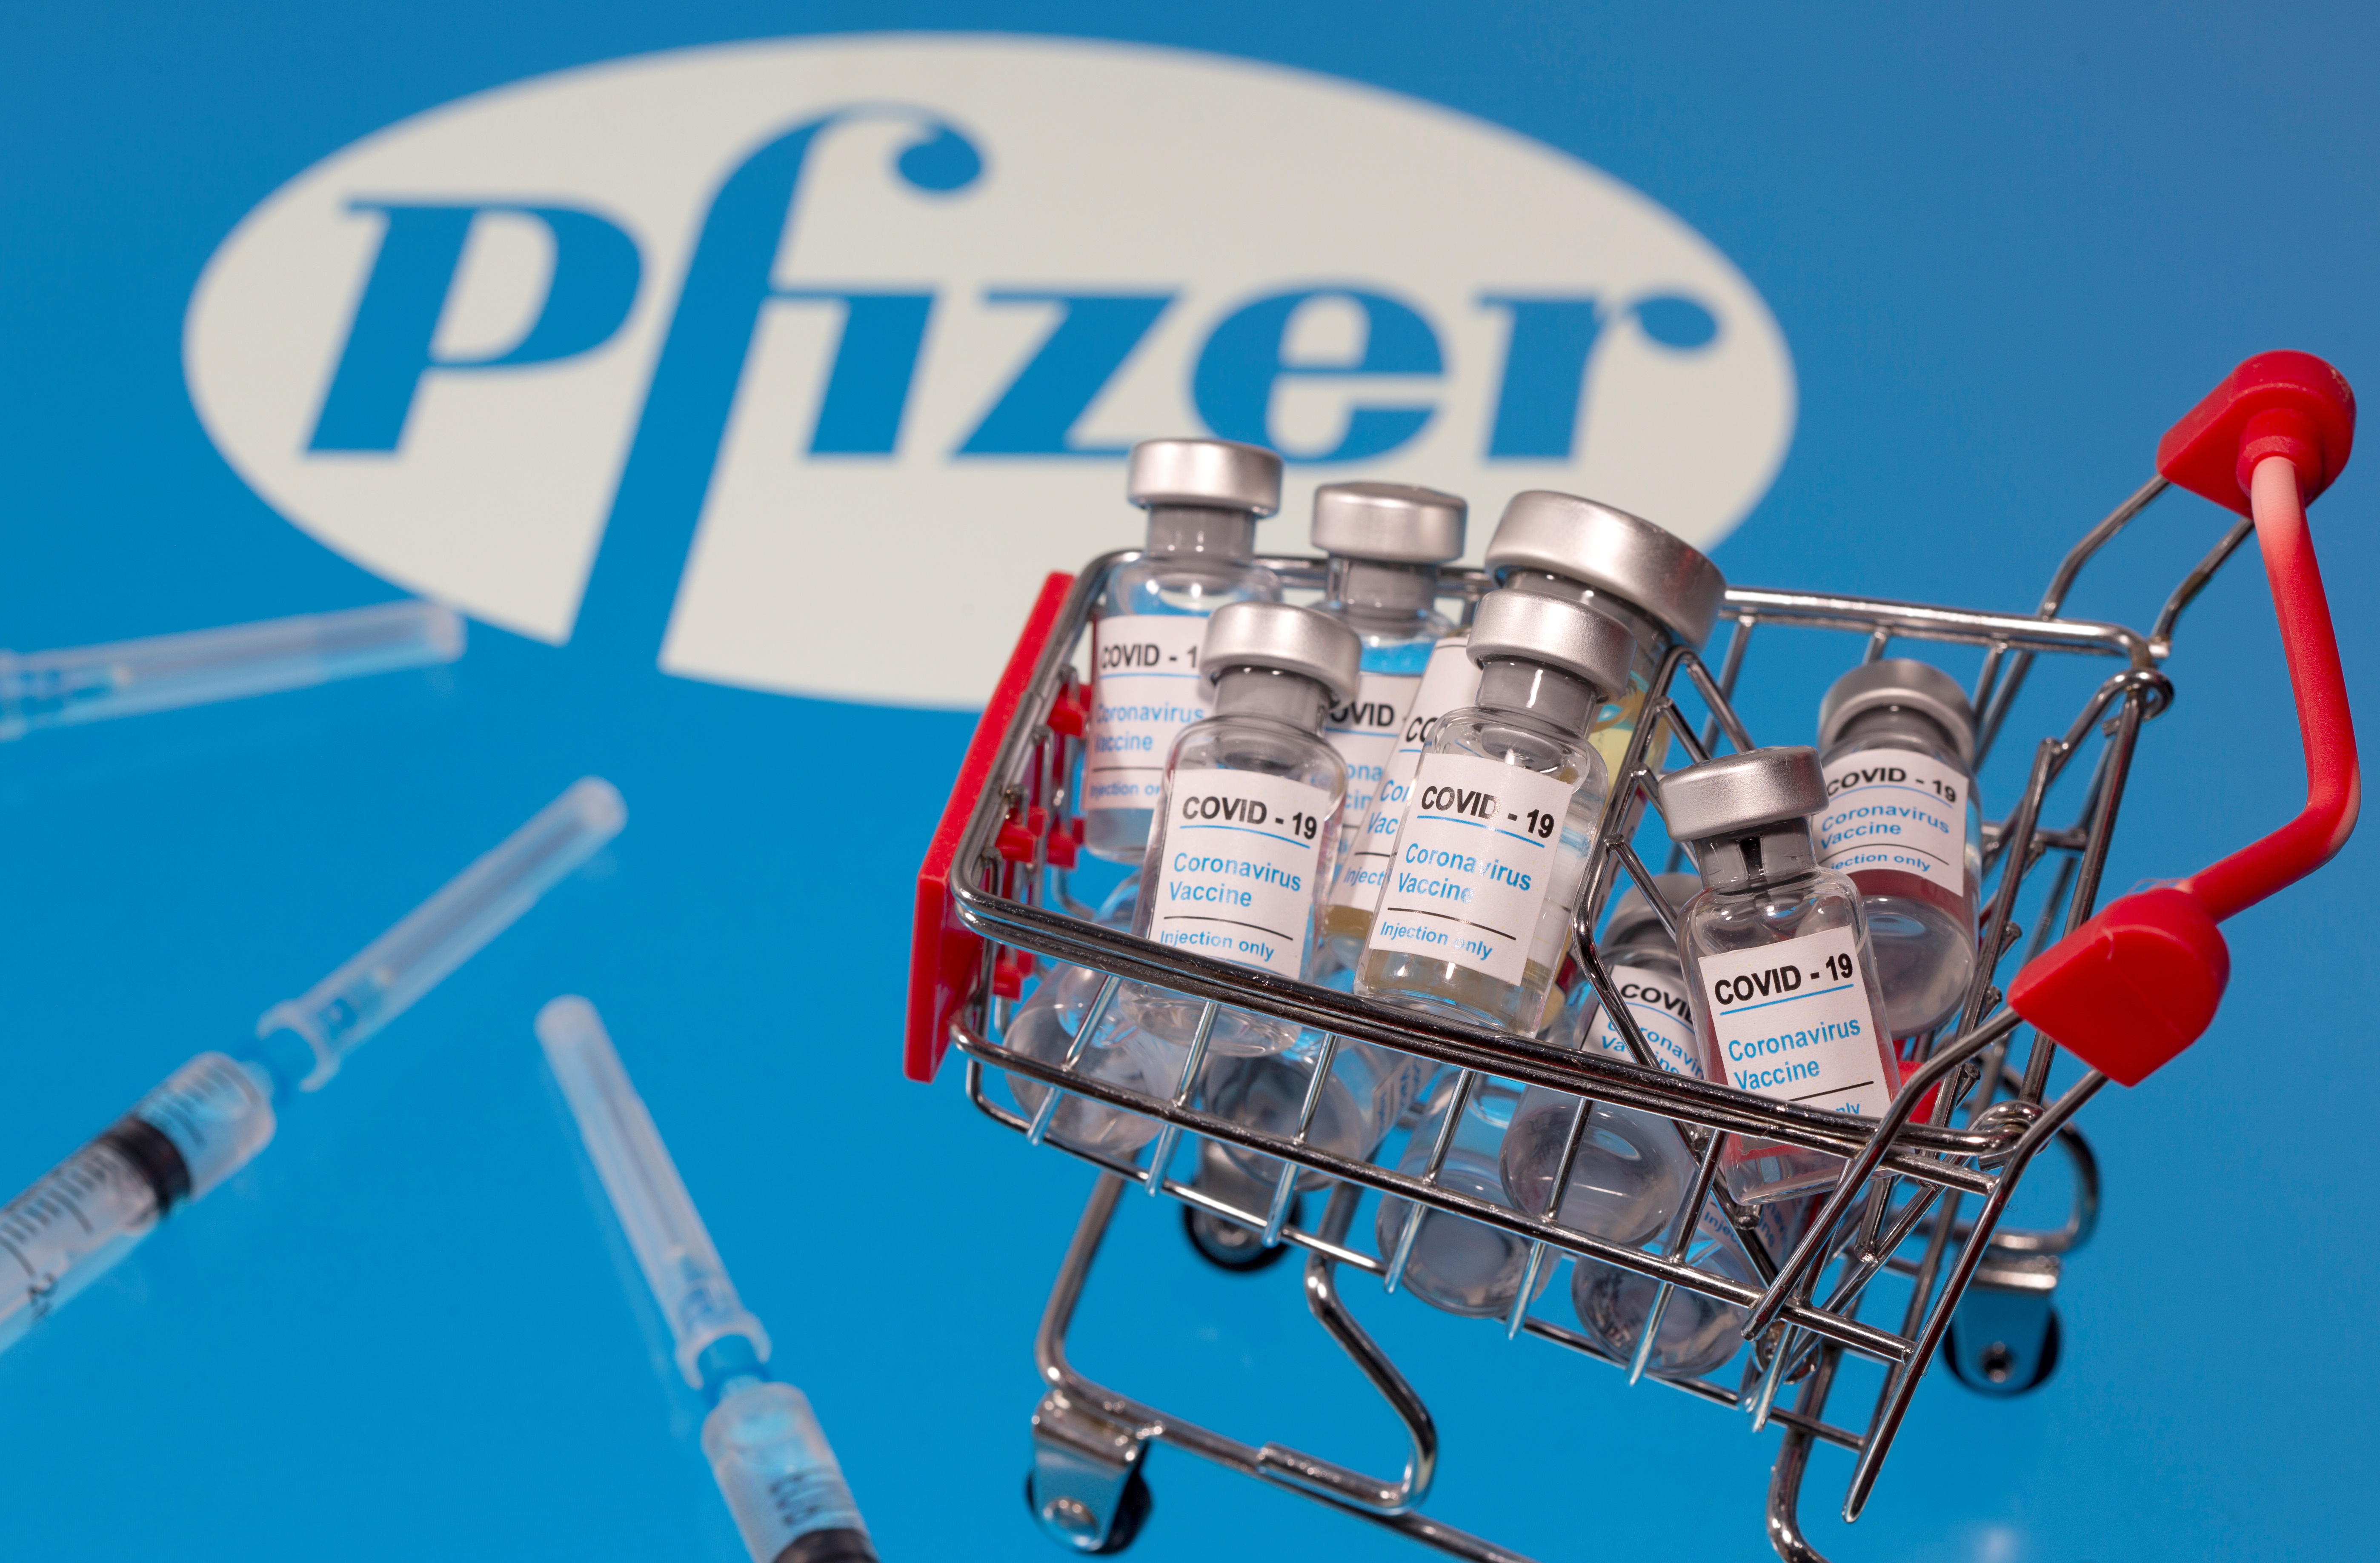 La vacuna de Pfizer/BioNtech fue aprobada sin precipitación, según regulador británico